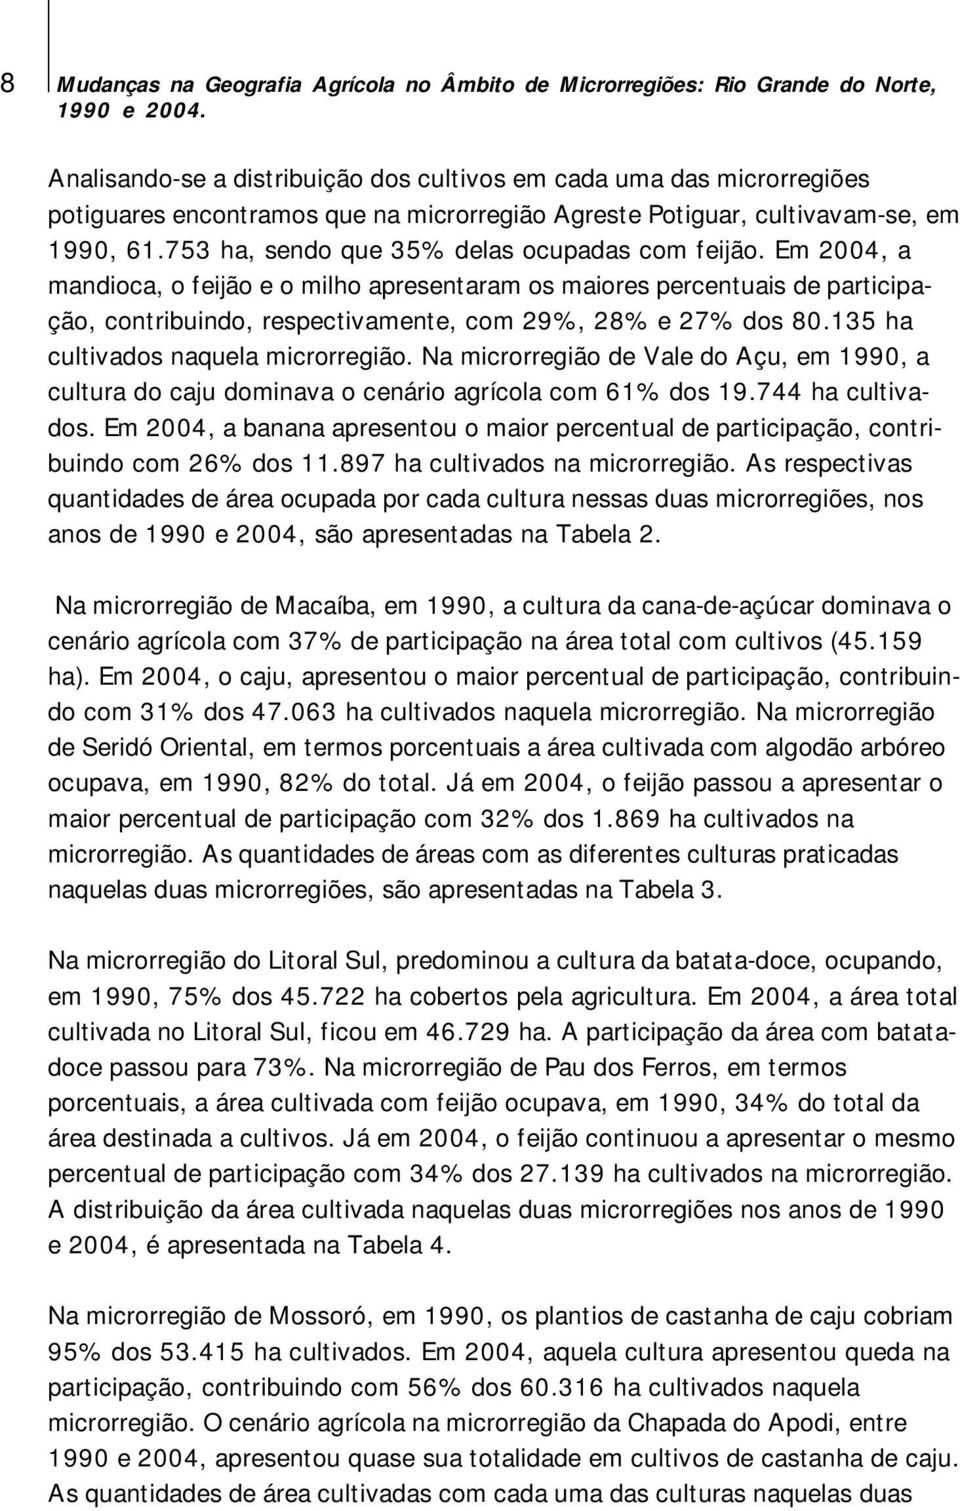 Em 2004, a mandioca, o feijão e o milho apresentaram os maiores percentuais de participação, contribuindo, respectivamente, com 29%, 28% e 27% dos 80.135 ha cultivados naquela microrregião.